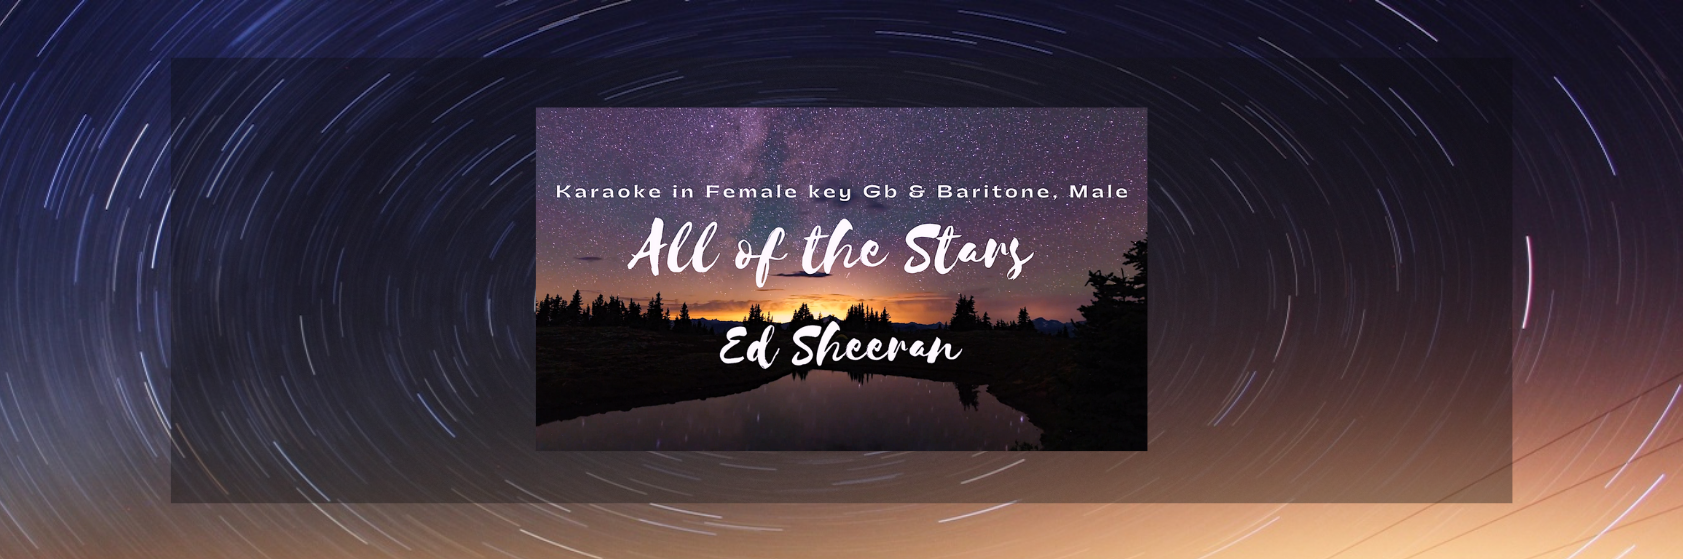 All of the Stars Ed Sheeran KARAOKE in Female key Gb and Baritone, Male